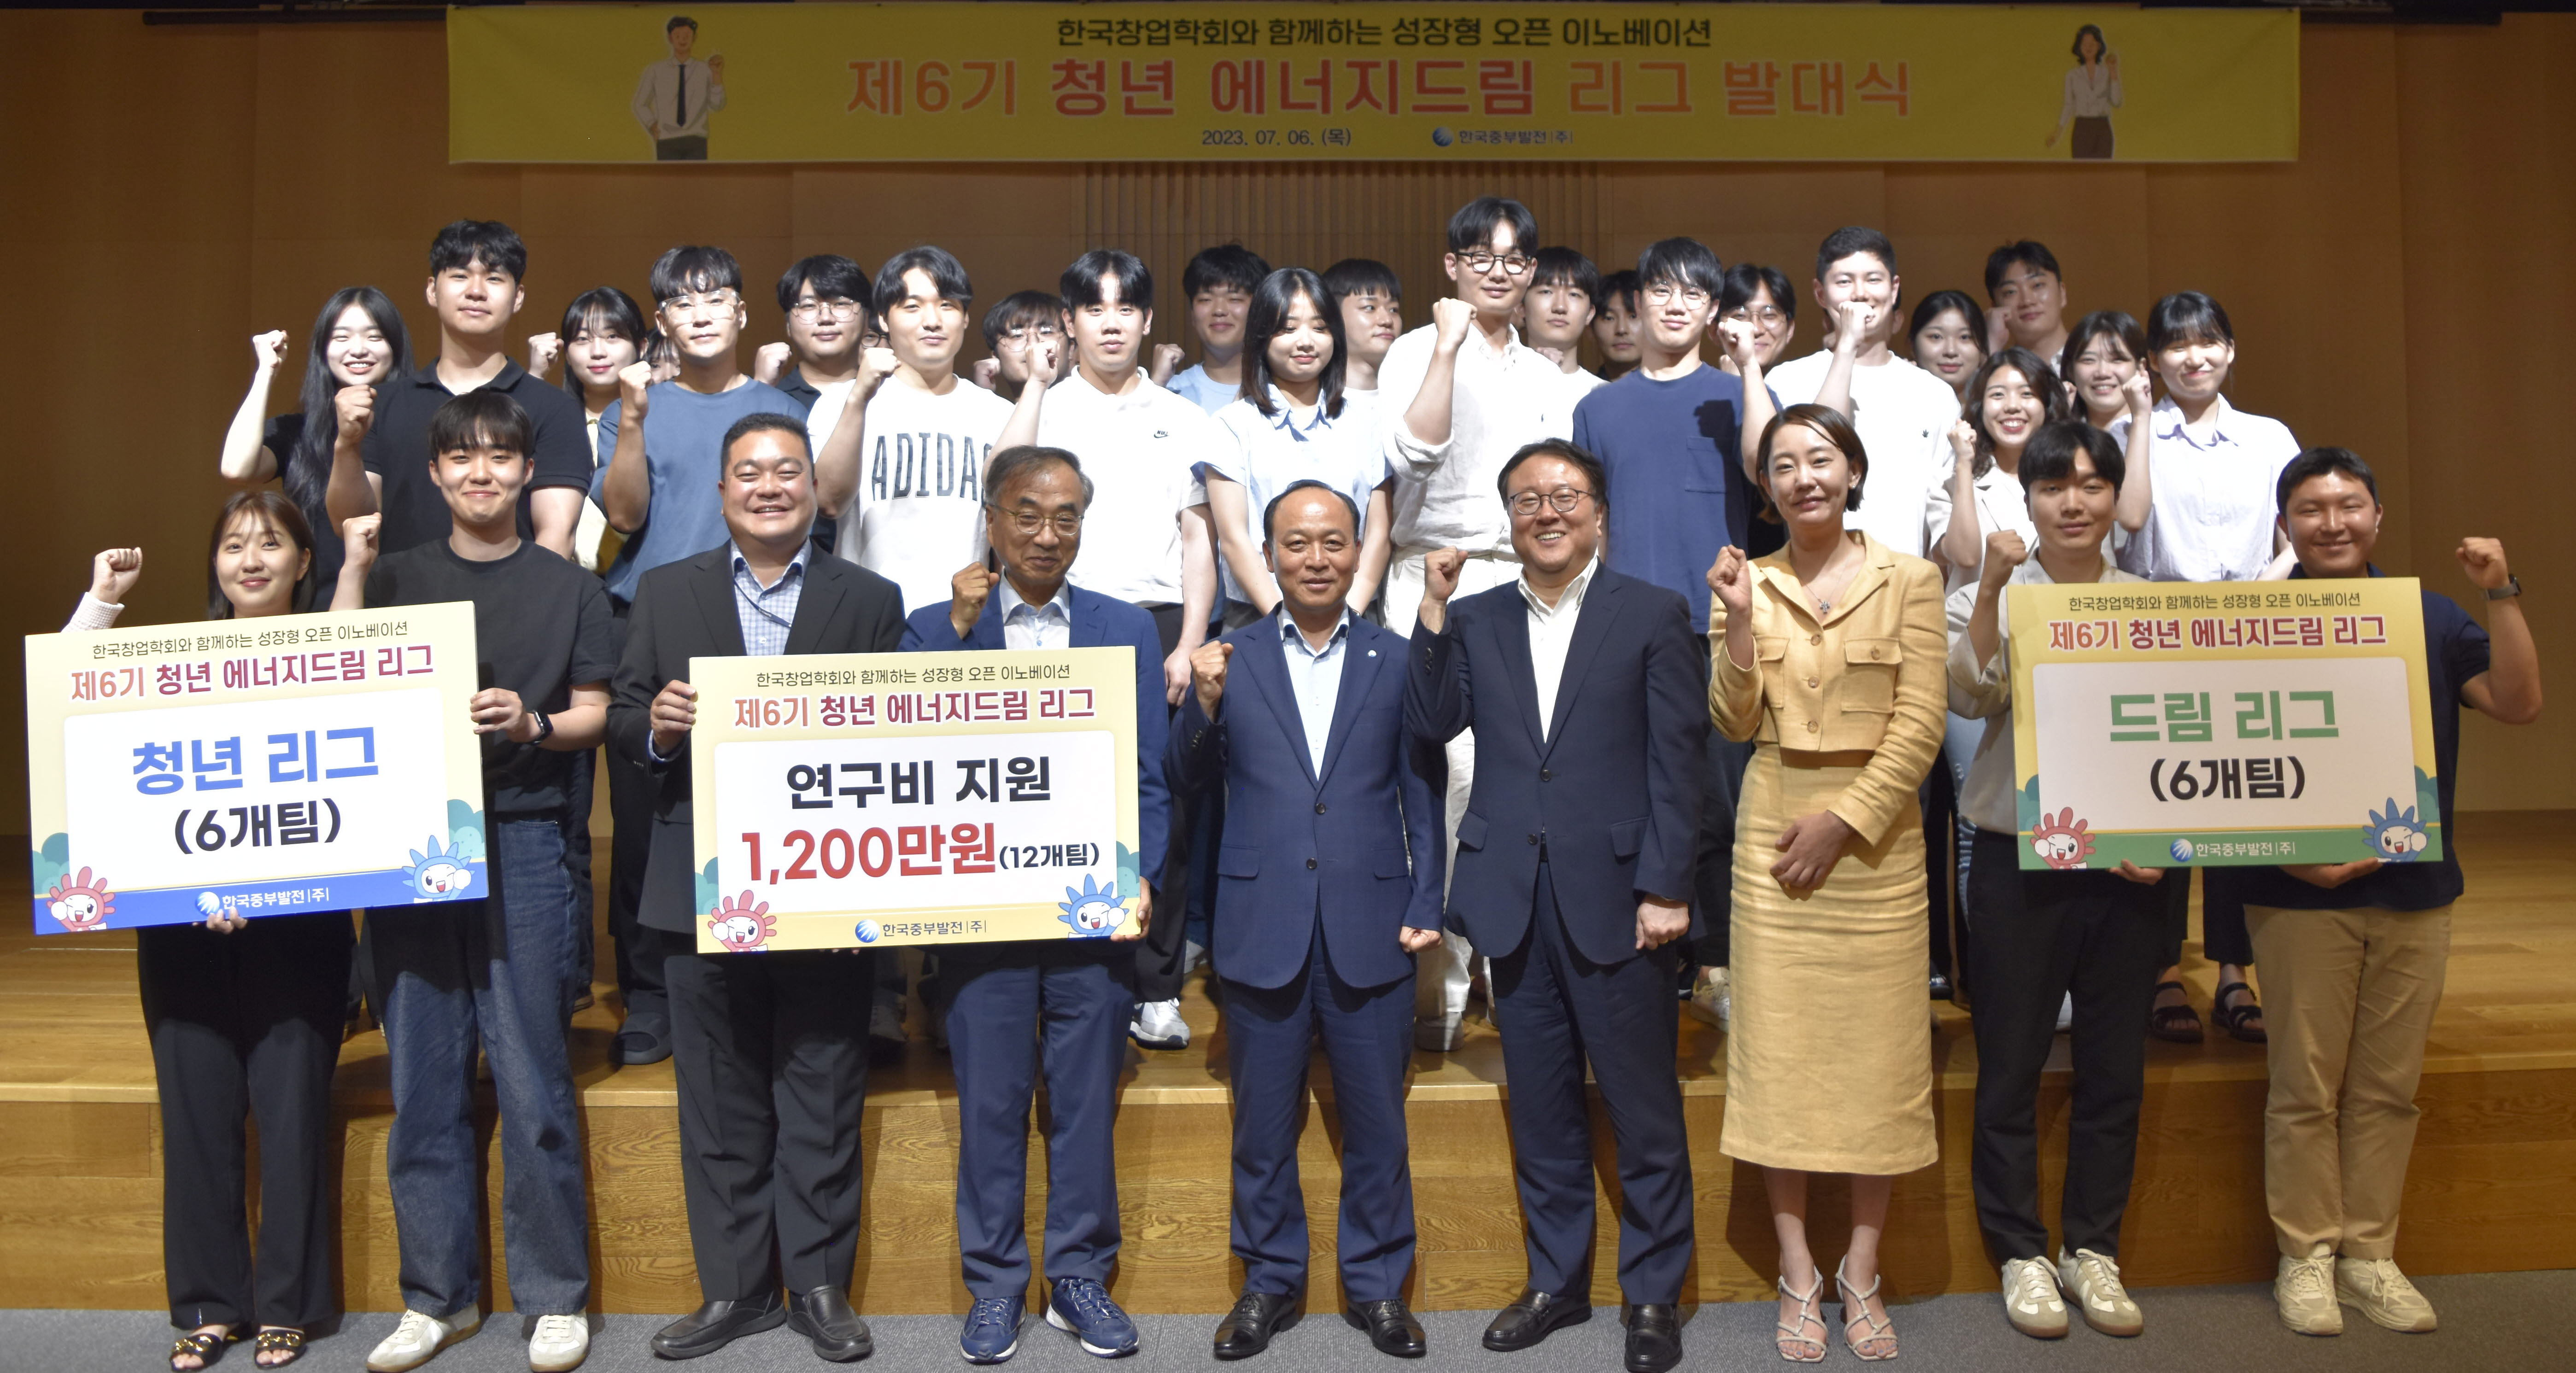 한국창업학회와 ‘제6기 청년 에너지드림 리그’ 상호 협력을 위한 업무협약 체결 및 발대식 개최 